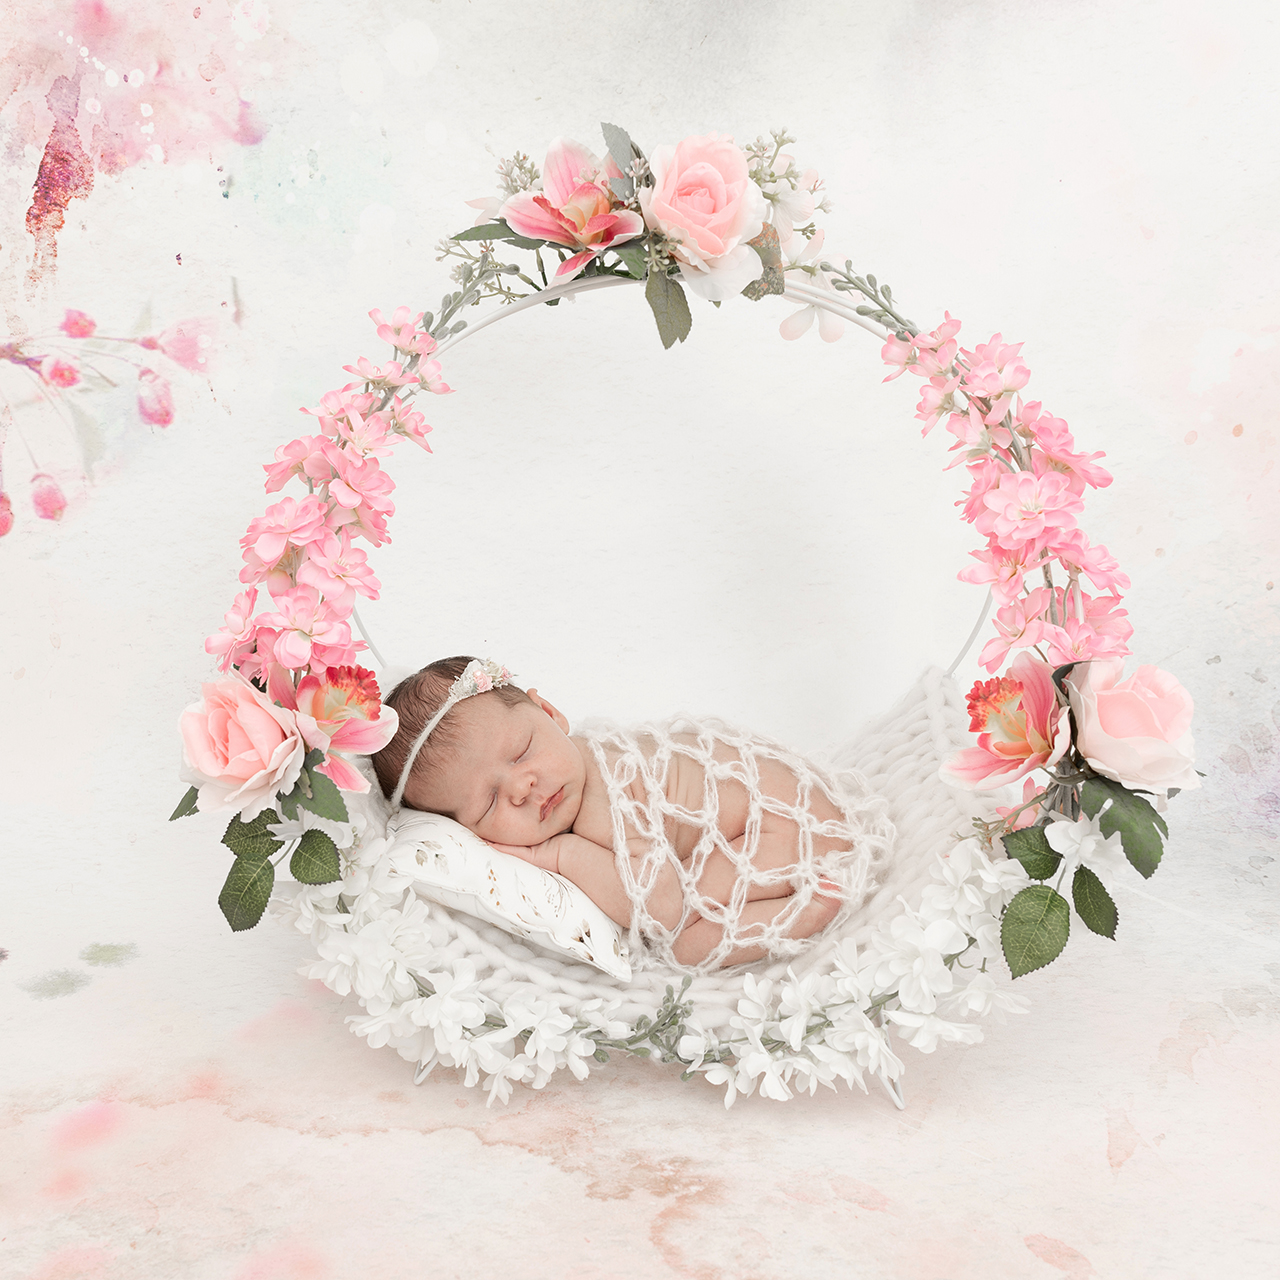 Fotografie Ine newborn boekel lief bloemen prinses roze